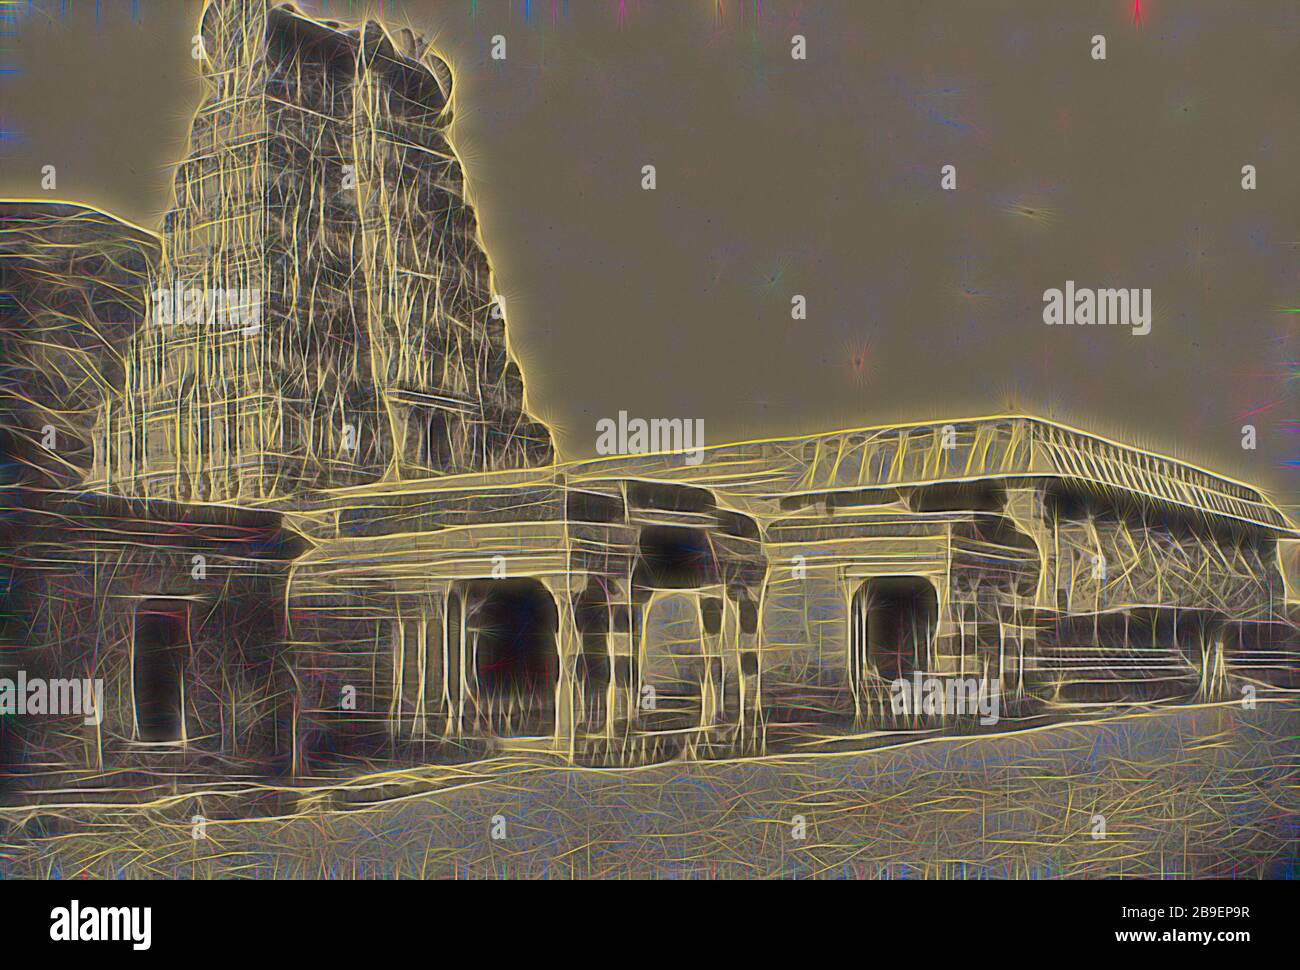 Secunder malese. Therooparungoonrum Pagoda ai piedi della collina, Capt. Linnaeus tripe (inglese, 1822 - 1902), Madura, India, 1858, carta salata stampa da un negativo carta, 25,6 × 37,6 cm (10 1,16 × 14 13,16 in, Reimaged by Gibon, disegno di calore allegre di luminosità e raggi di luce radianza. Arte classica reinventata con un tocco moderno. La fotografia ispirata al futurismo, che abbraccia l'energia dinamica della tecnologia moderna, del movimento, della velocità e rivoluziona la cultura. Foto Stock